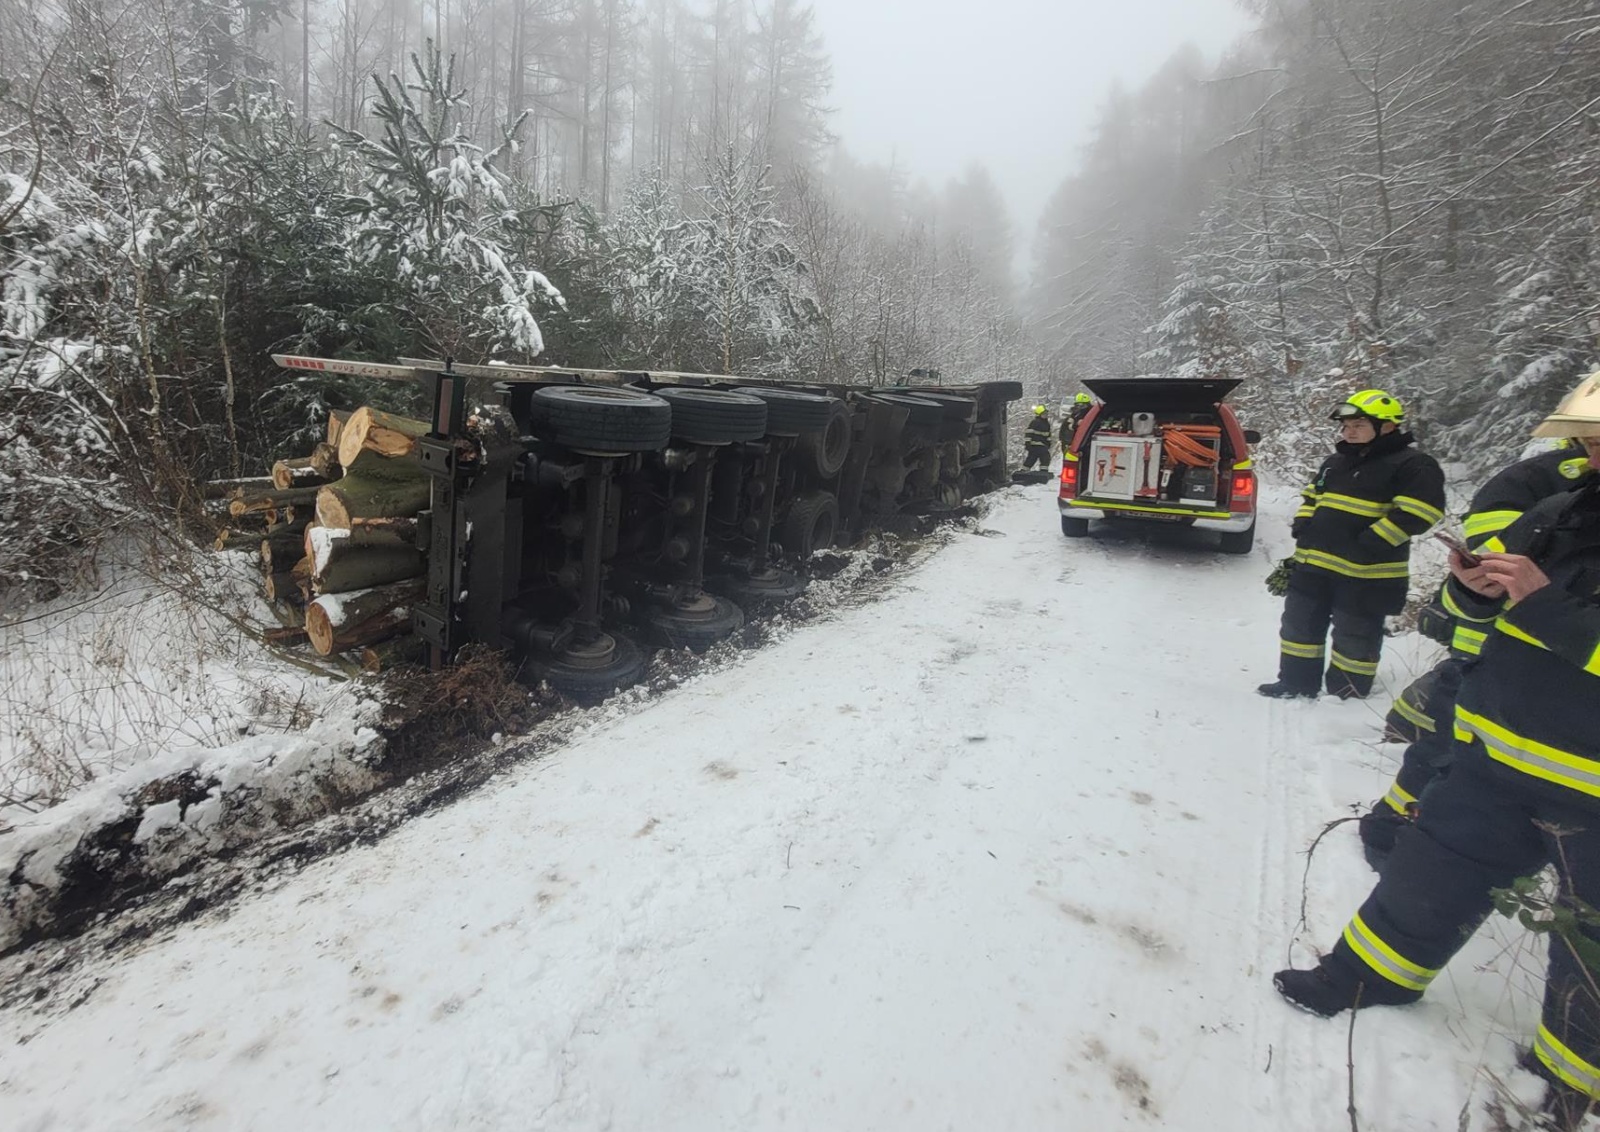 005-Havárie nákladní soupravy se dřevem v lesním úseku u obce Třeboc v okrese Rakovník.jpg